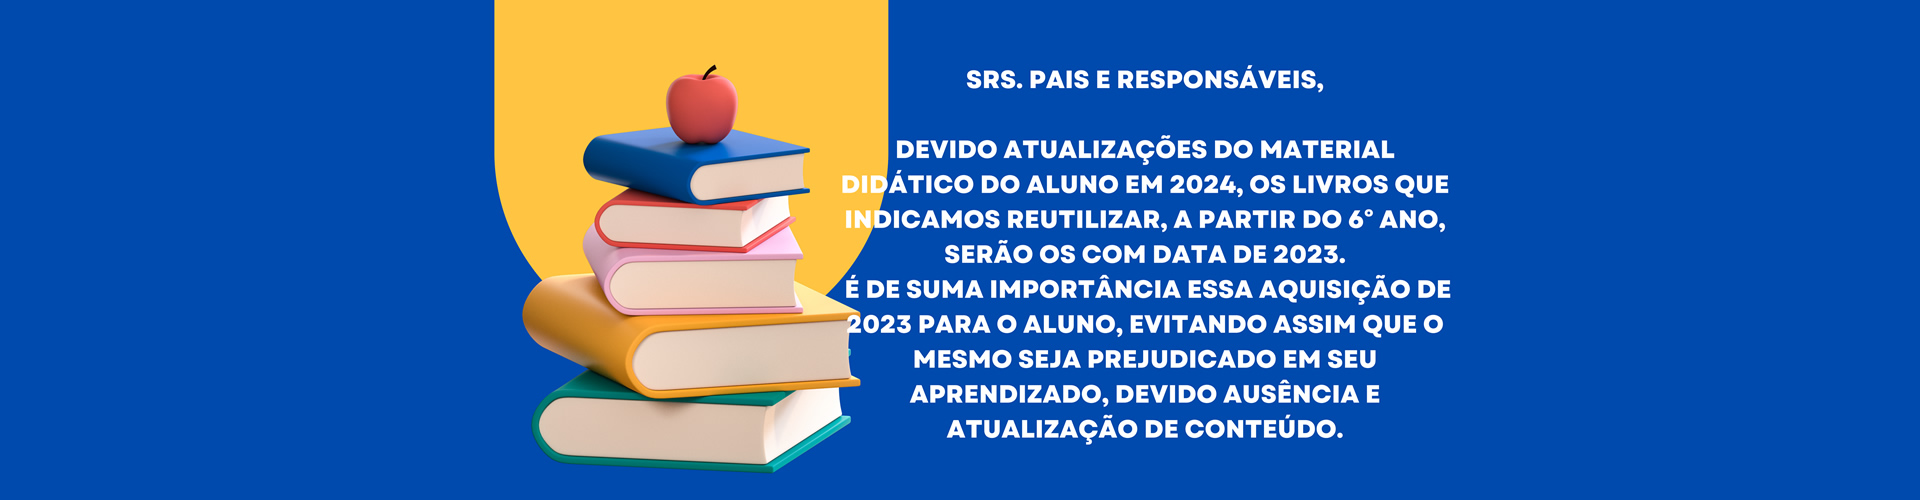 Col�gio Lema - Educa��o Infantil, Integral, Ensino Fundamental I, Fundamental II e M�dio. Vila Leopoldina - S�o Paulo, SP